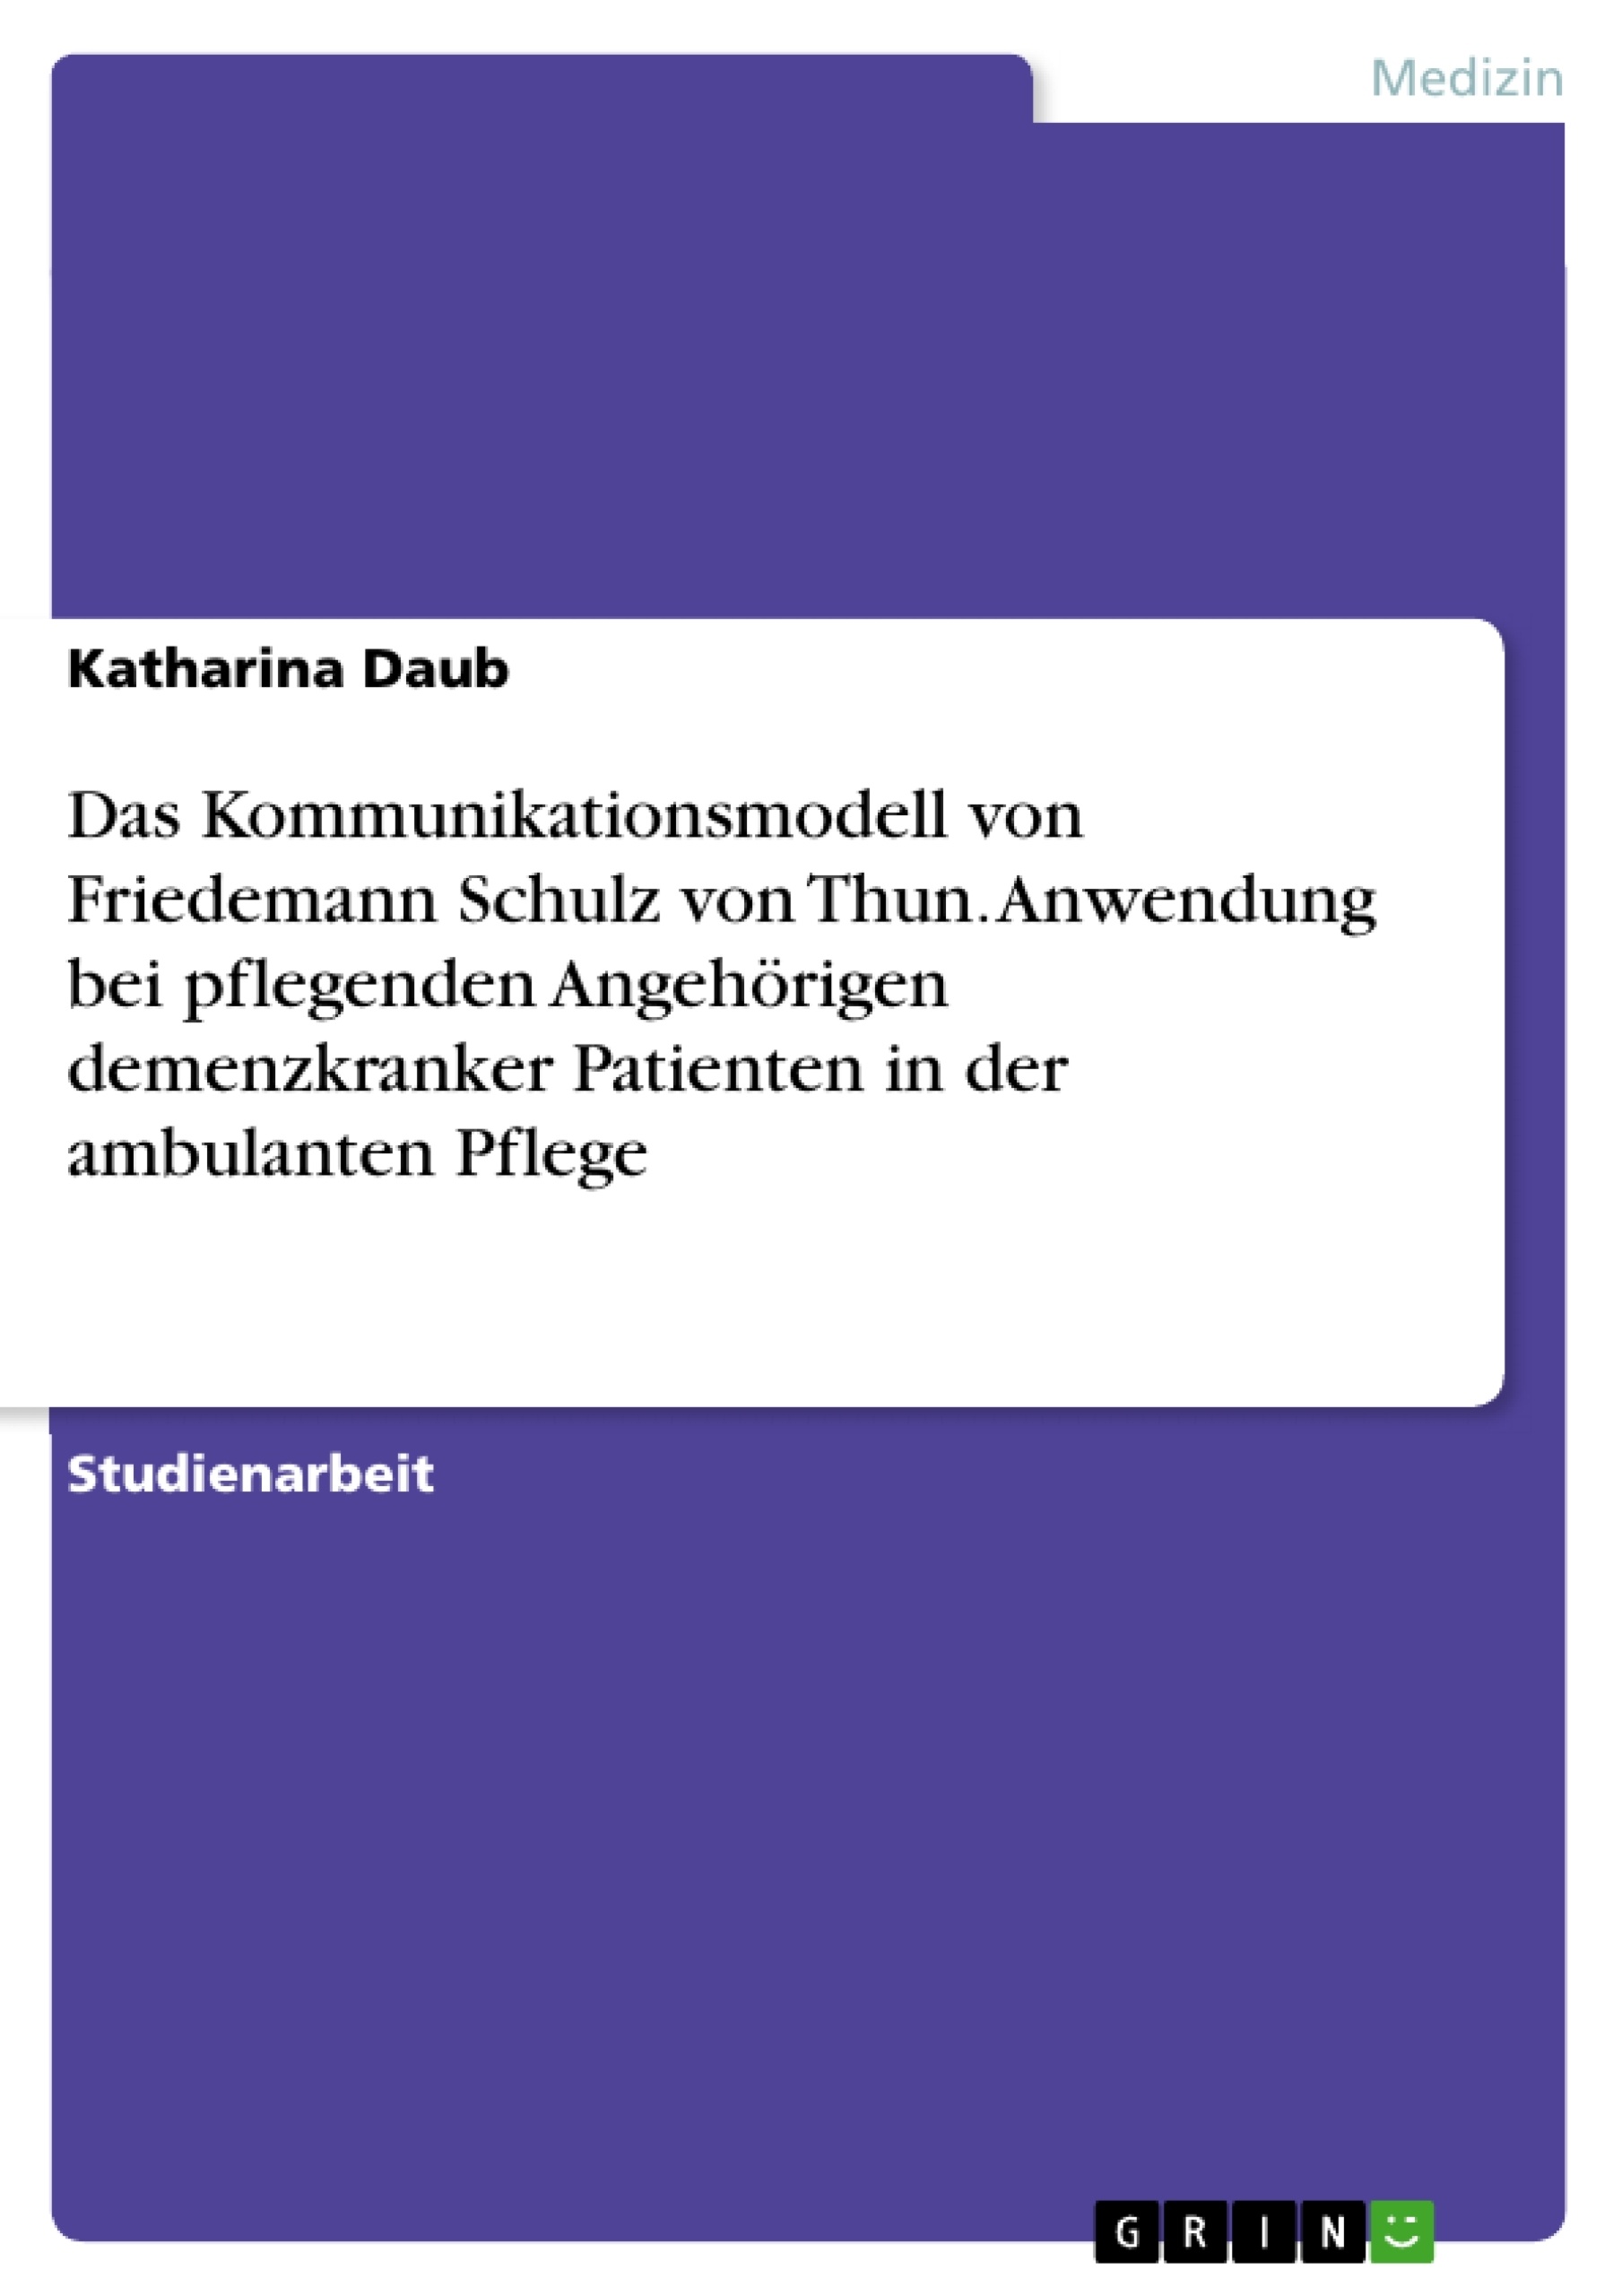 Title: Das Kommunikationsmodell von Friedemann Schulz von Thun. Anwendung bei pflegenden Angehörigen demenzkranker Patienten in der ambulanten Pflege